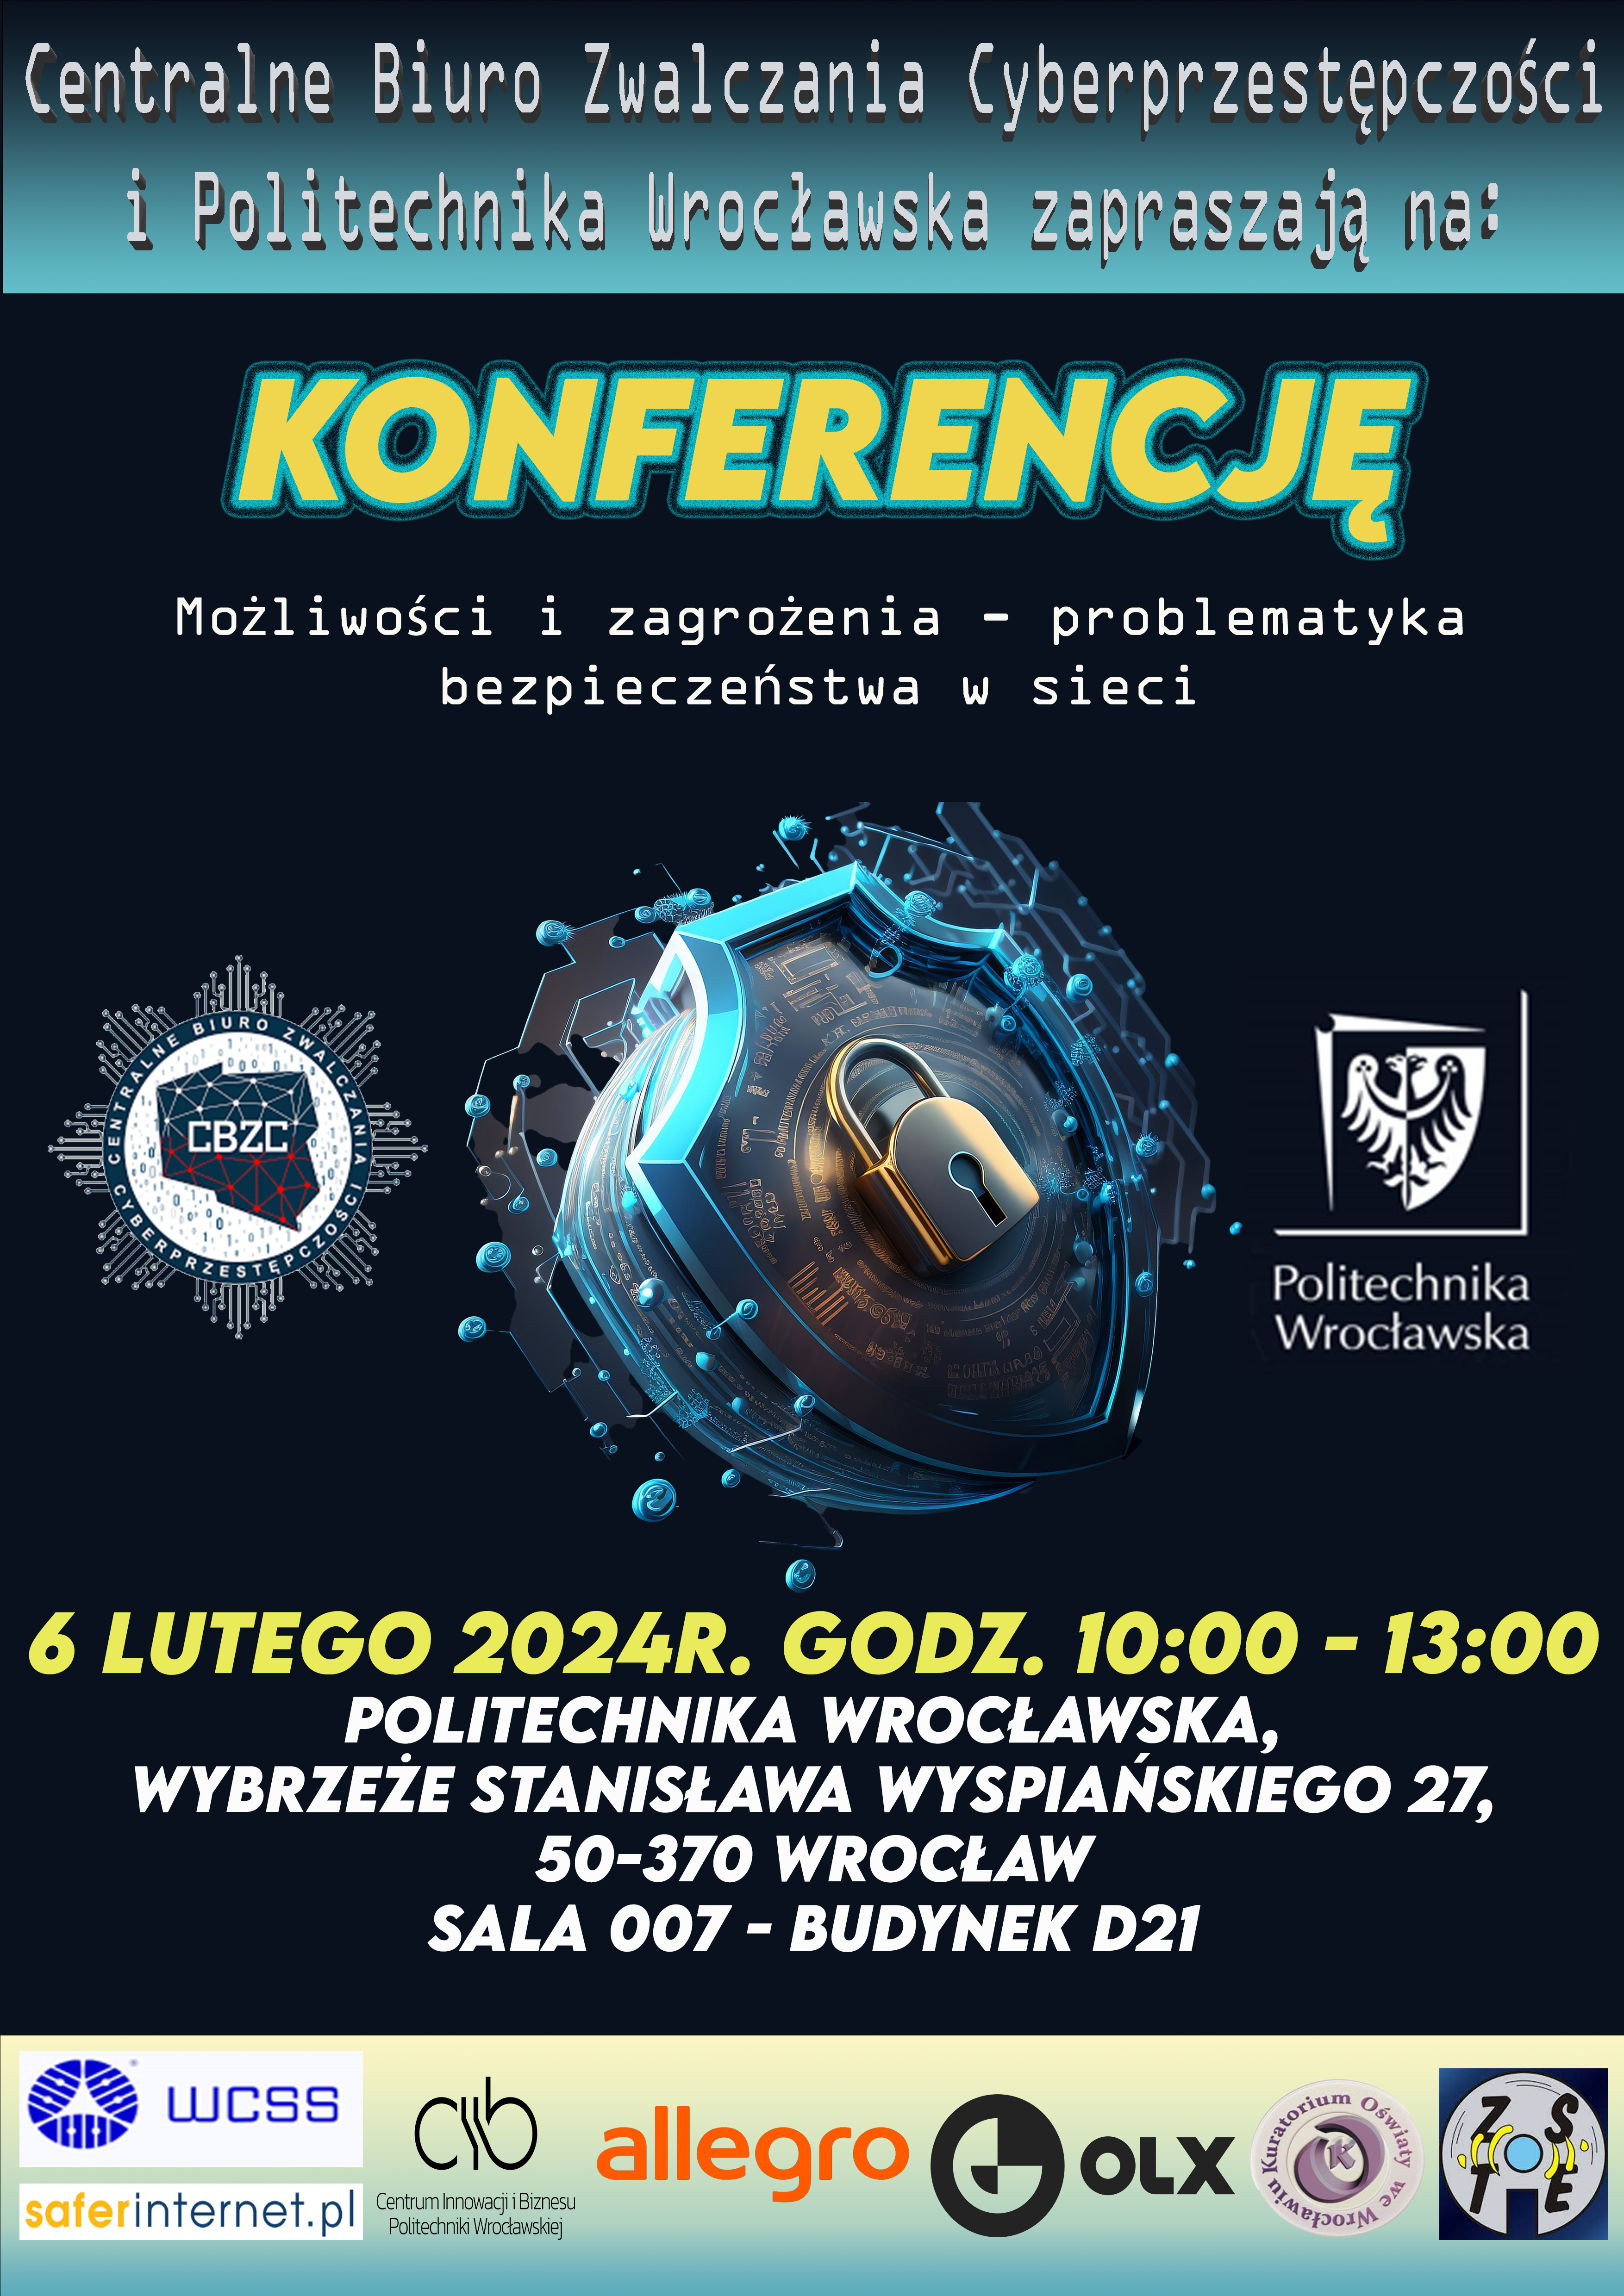 Plakat informujący o konferencji "Możliwości i zagrożenia - problematyka bezpieczeństwa sieci". Wydarzenie odbywa sie w dniu 6 lutego 2024 w godzinach 10:00-13:00. 